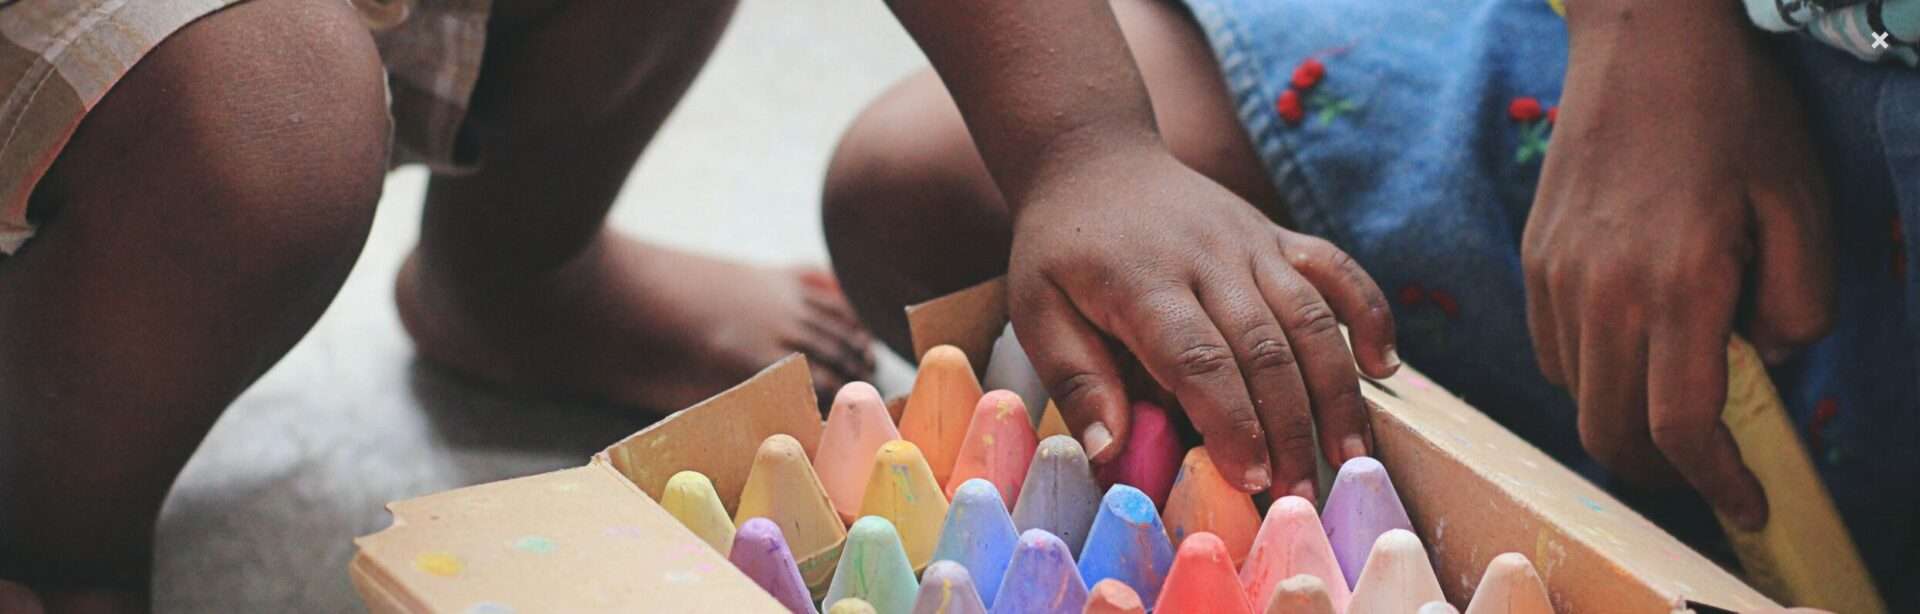 Niños pequeños juegan con tizas de colores